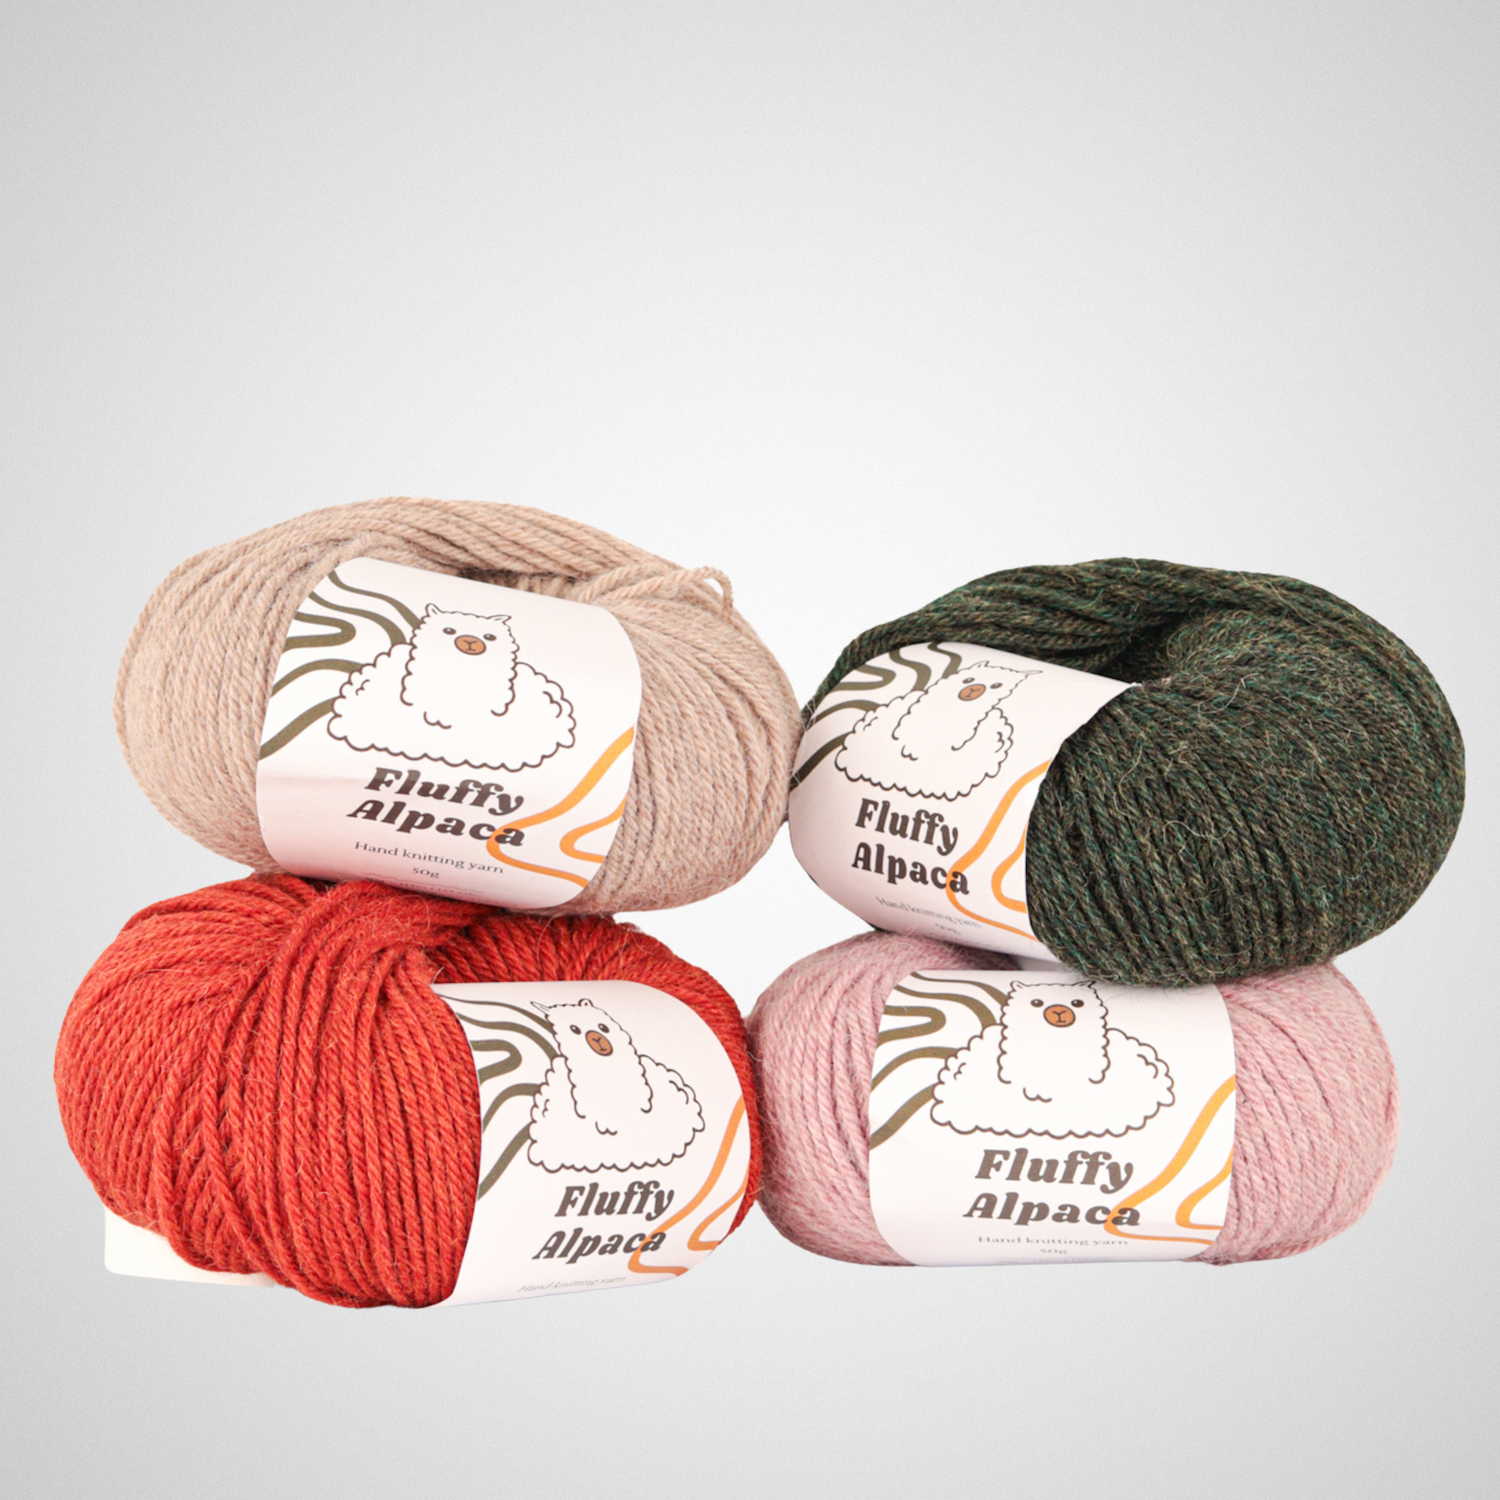 Fluffy Alpaca - Knitting yarn - 100% alpaca wool - All colors